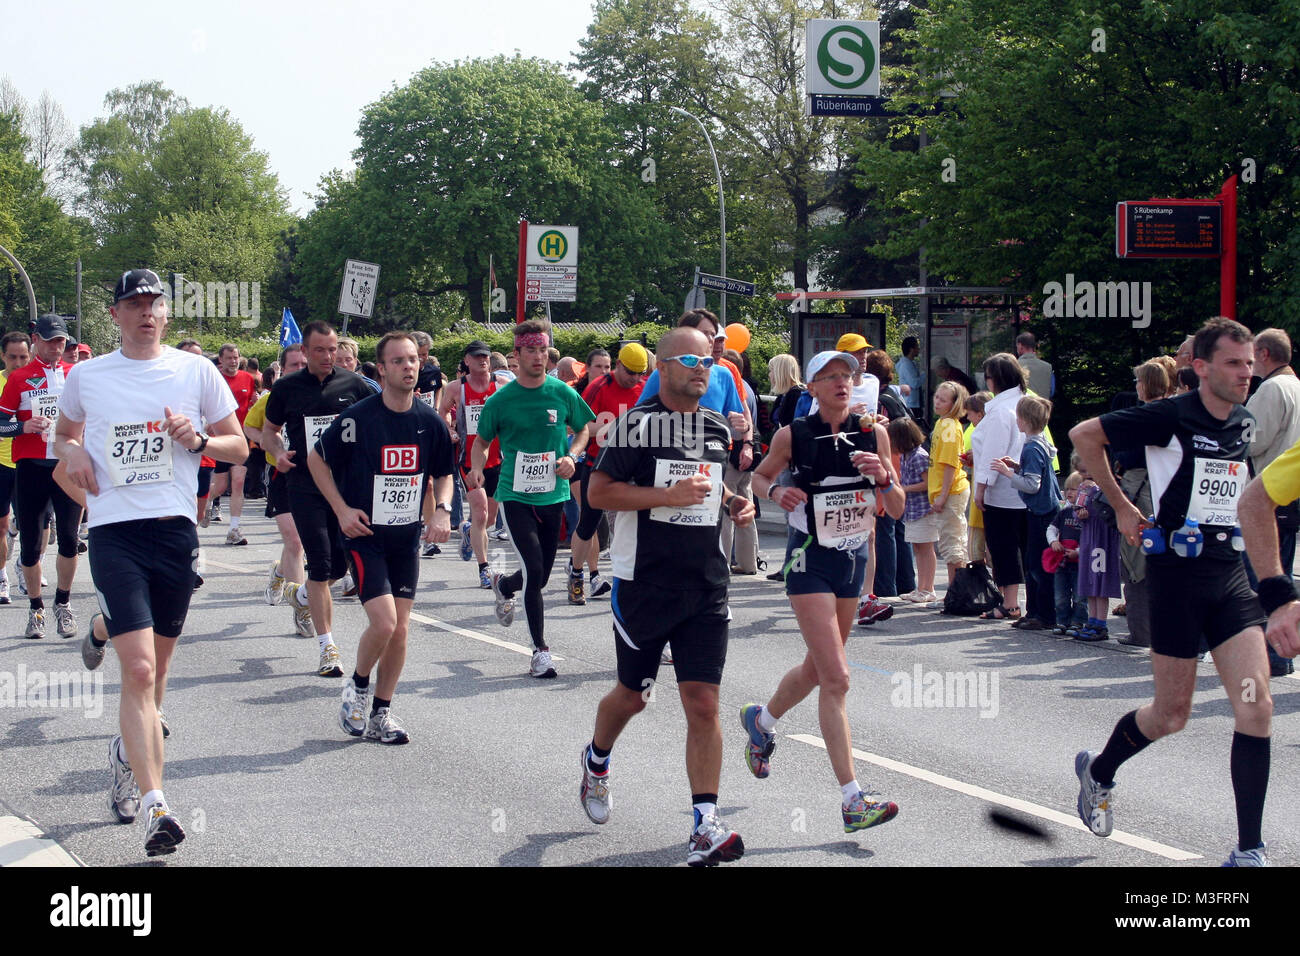 Maratona di Amburgo 2009, 20158 Teilnehmer und ueber 600000 Zuschauer beim Hamburg Marathon, 26.04.2009 Foto Stock